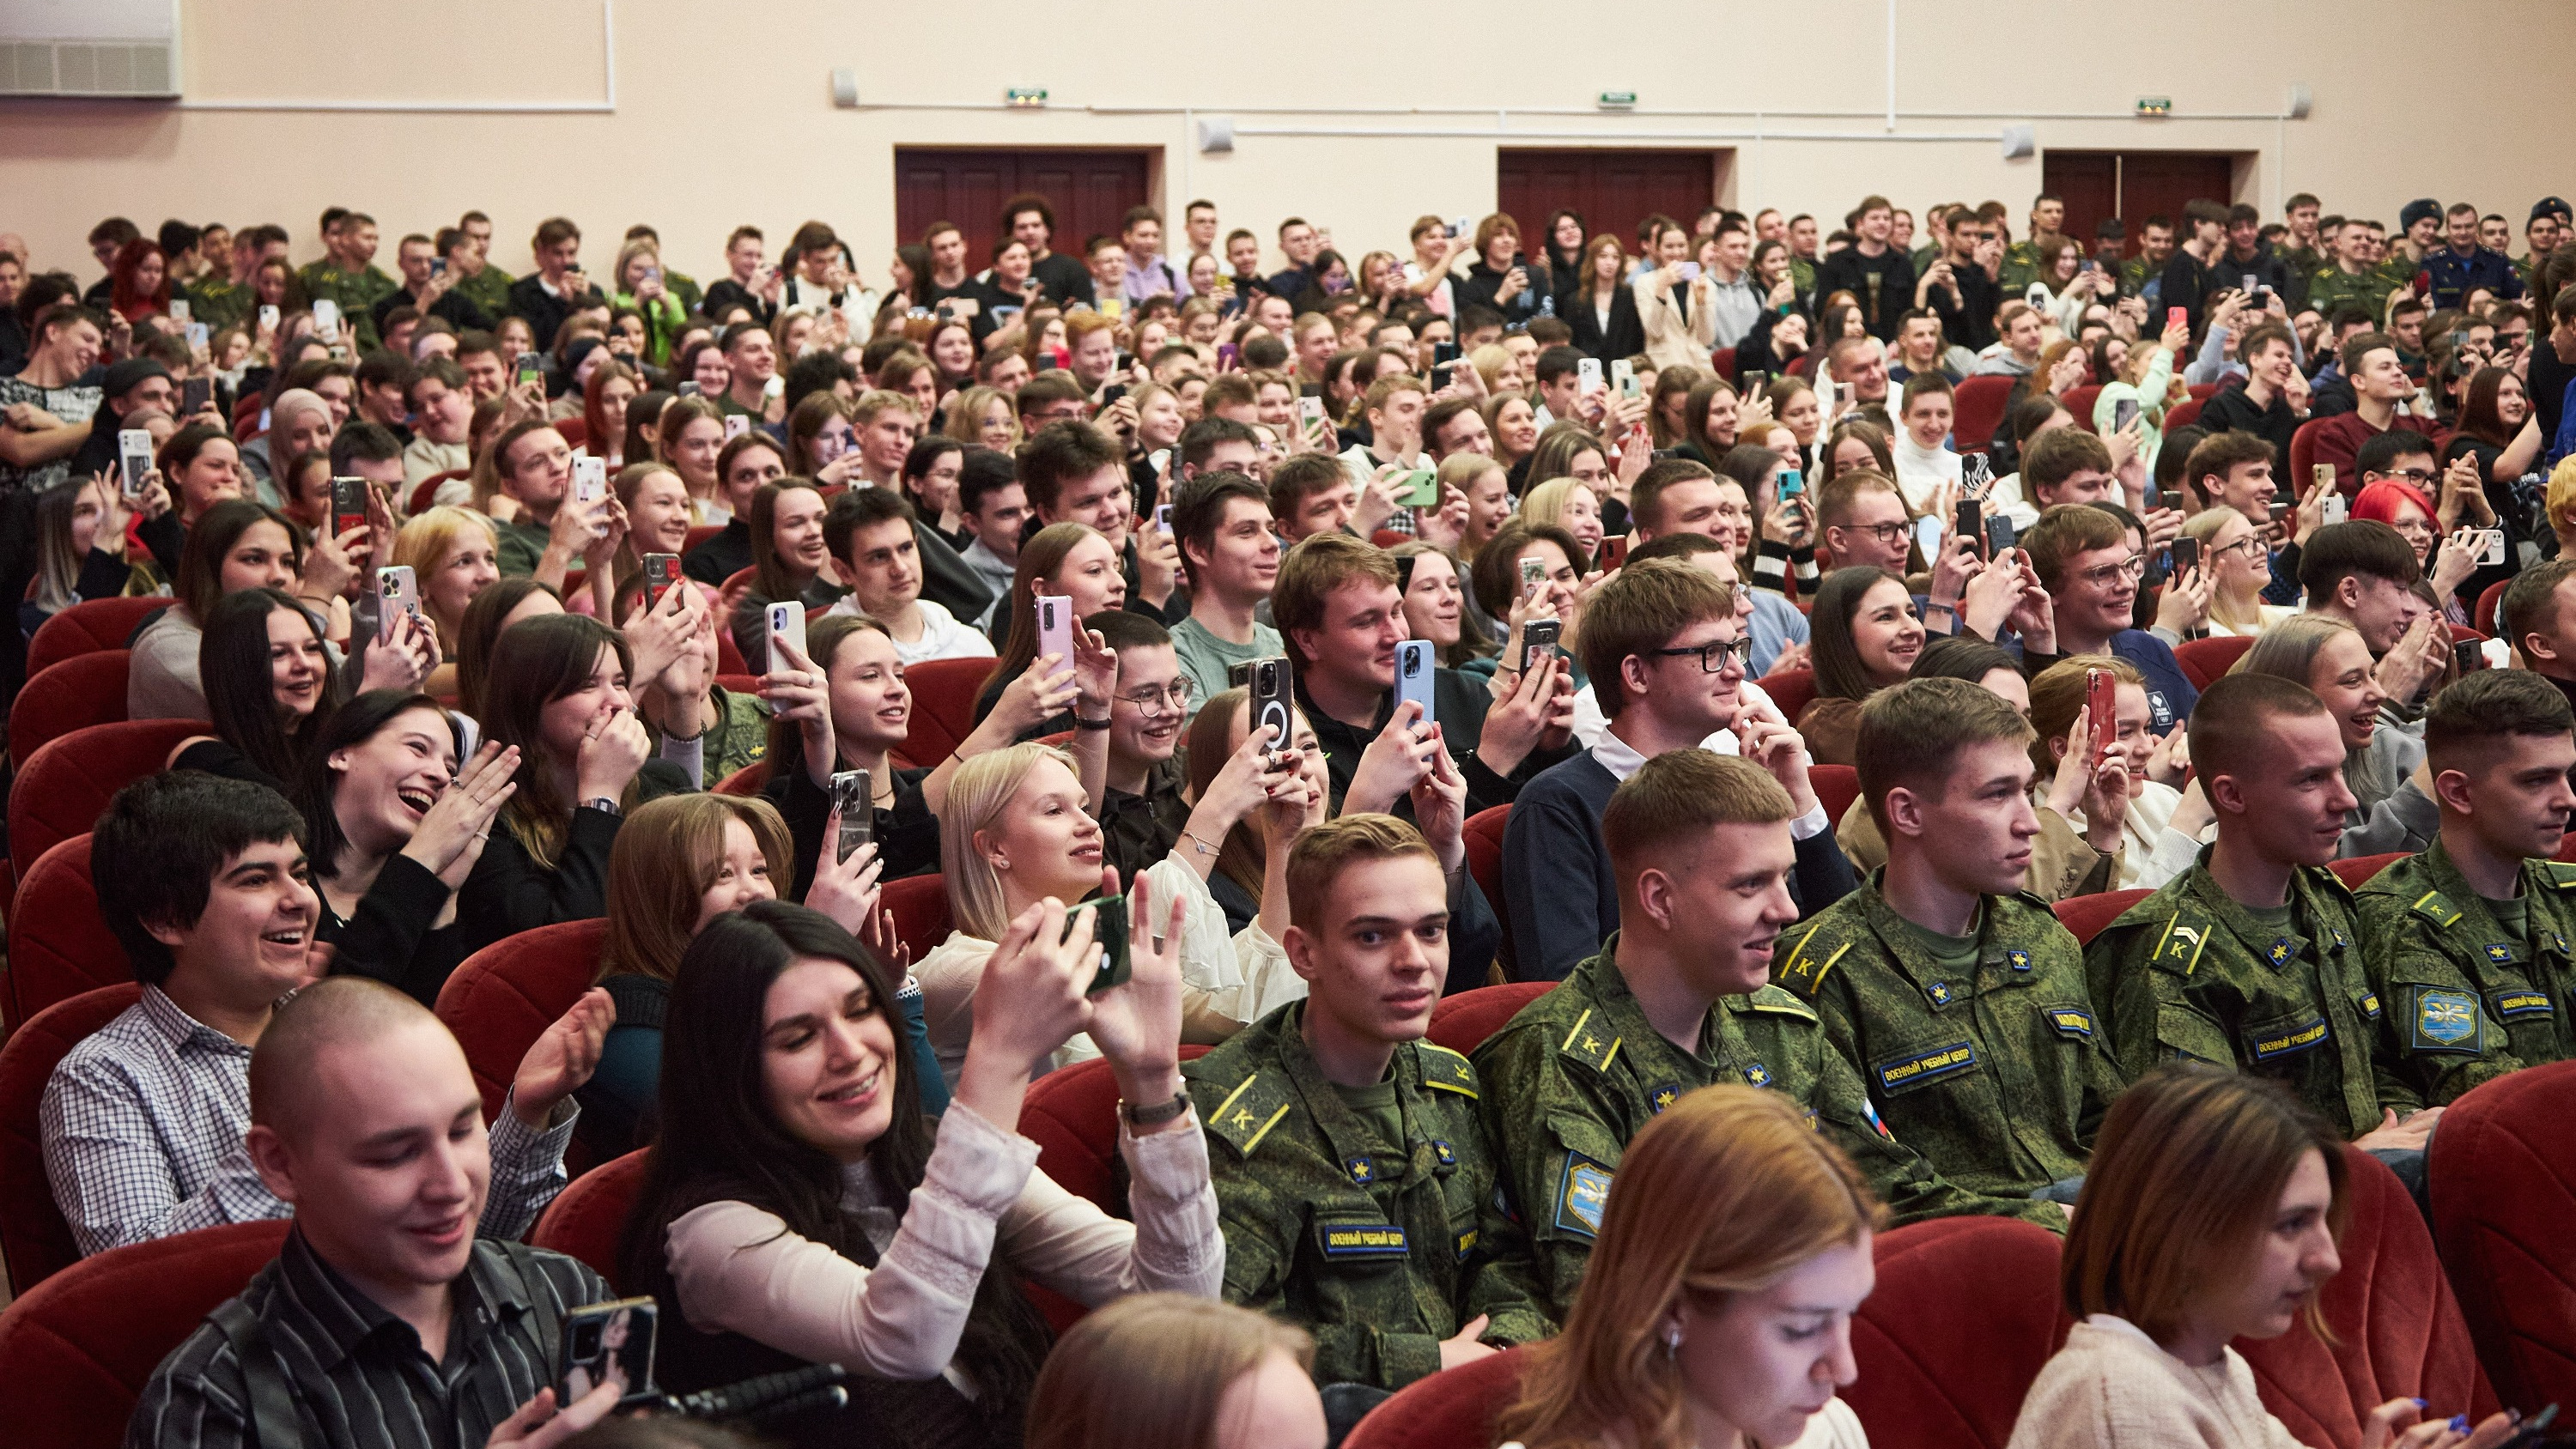 Кричали «Россия!» и два часа ждали автограф: как в Самаре студенты с Екатериной Мизулиной встречались